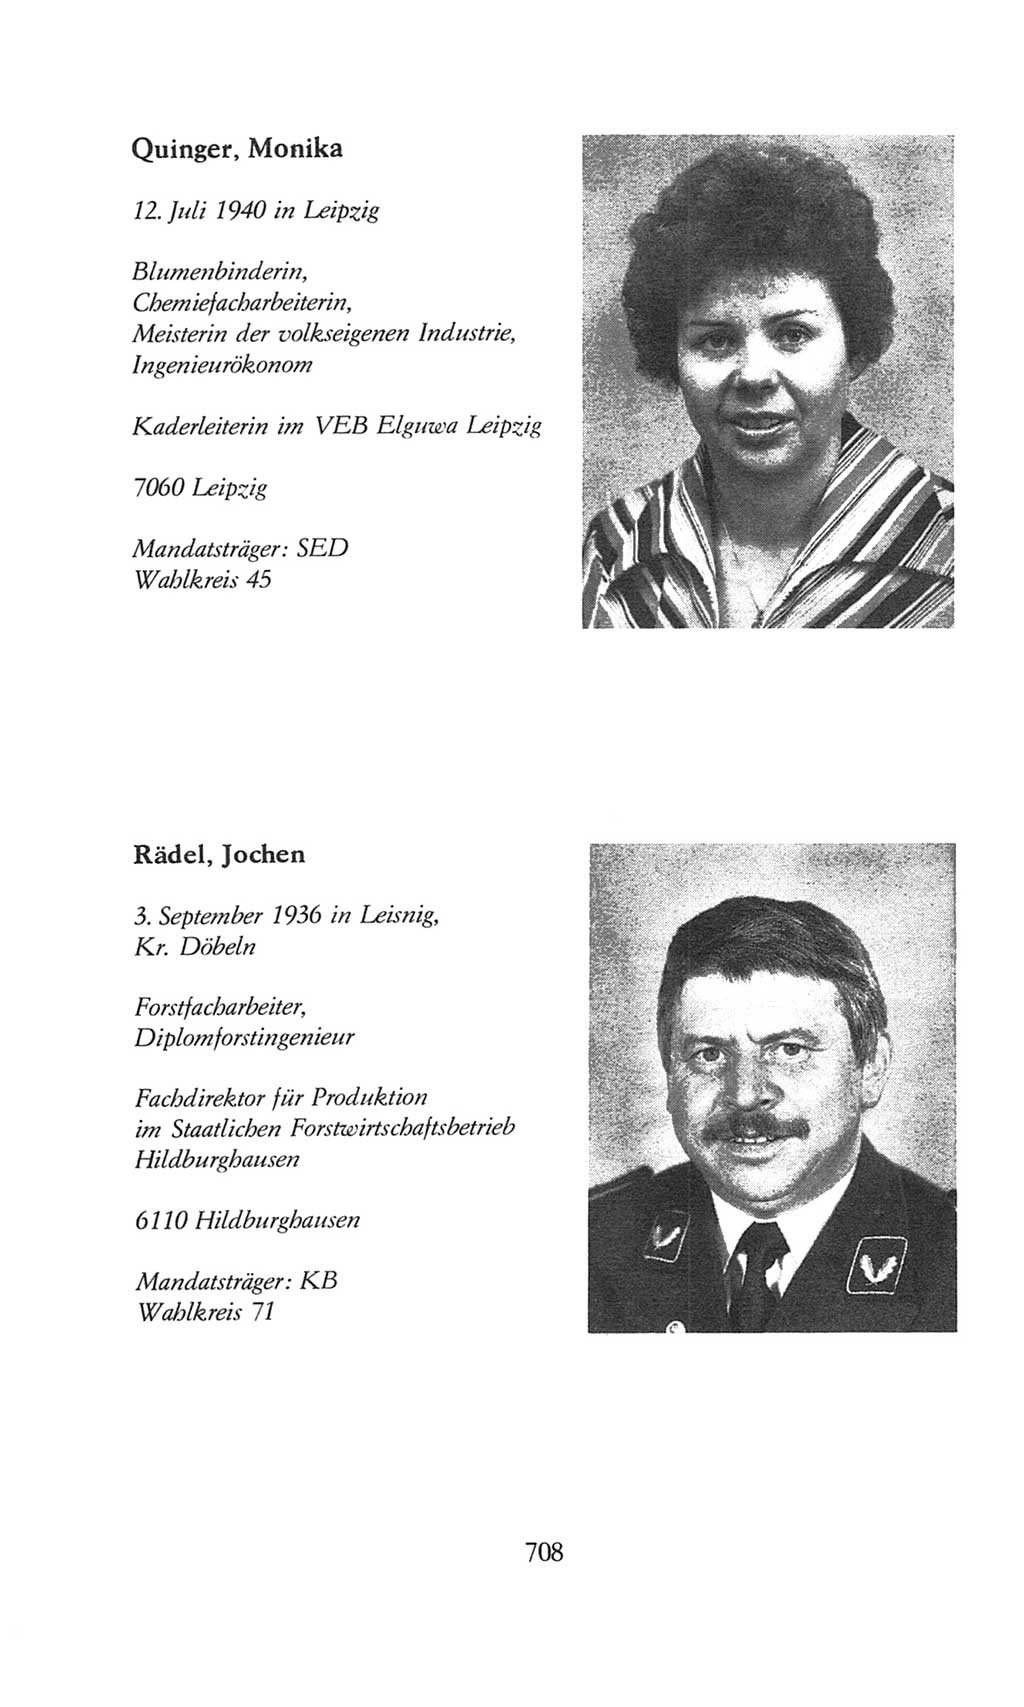 Volkskammer (VK) der Deutschen Demokratischen Republik (DDR), 8. Wahlperiode 1981-1986, Seite 708 (VK. DDR 8. WP. 1981-1986, S. 708)